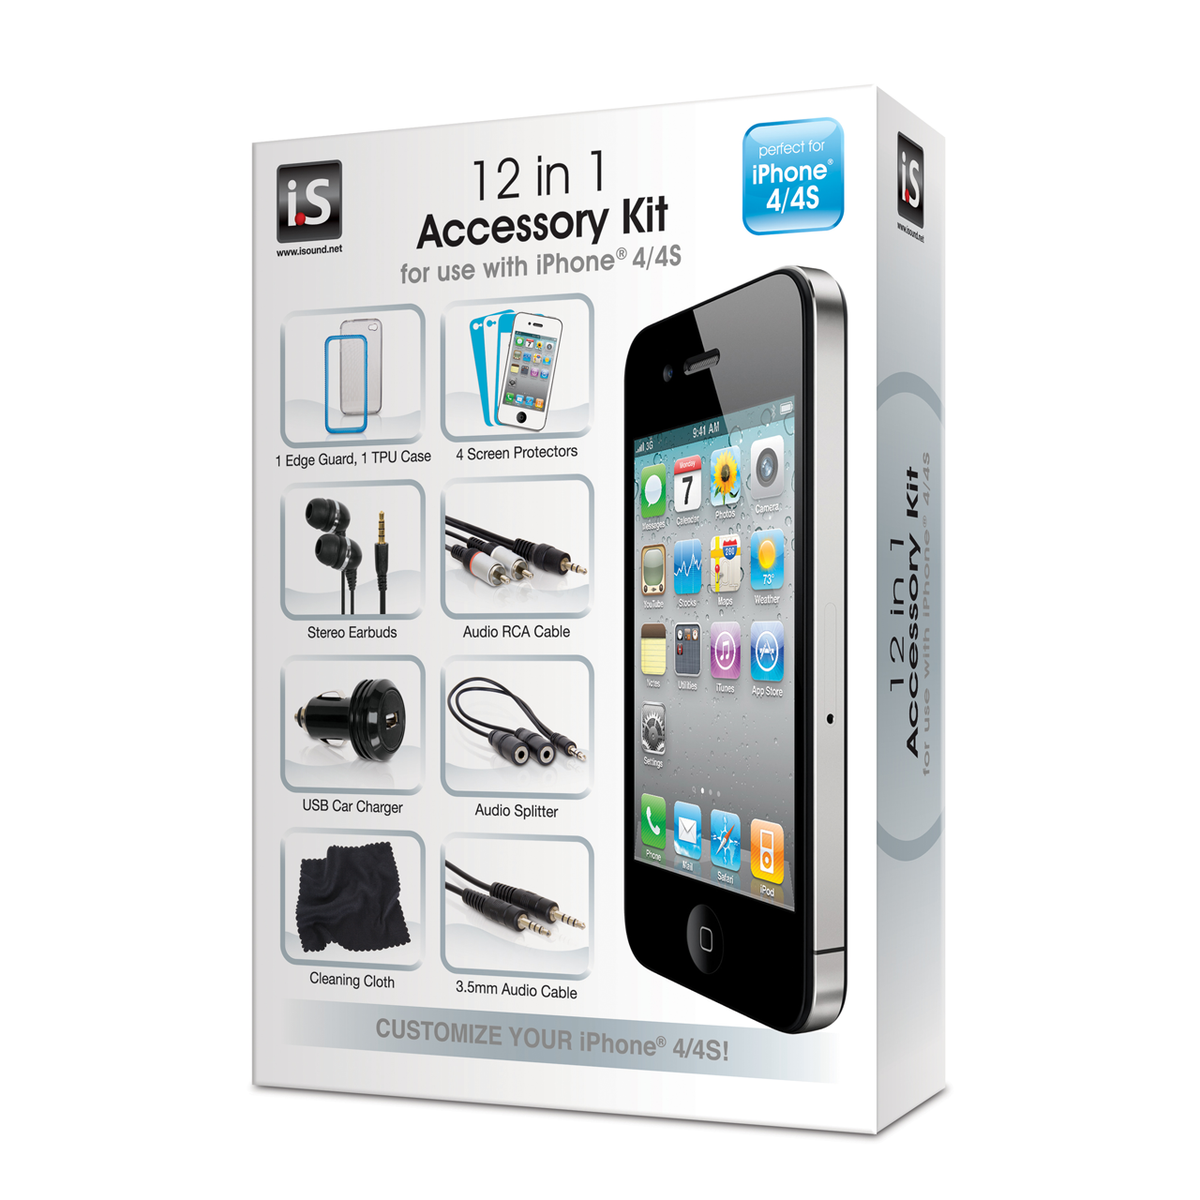 Tøm skraldespanden Majroe Seneste nyt 12 in 1 Accessory Kit for iPhone 4 / 4s - iSound